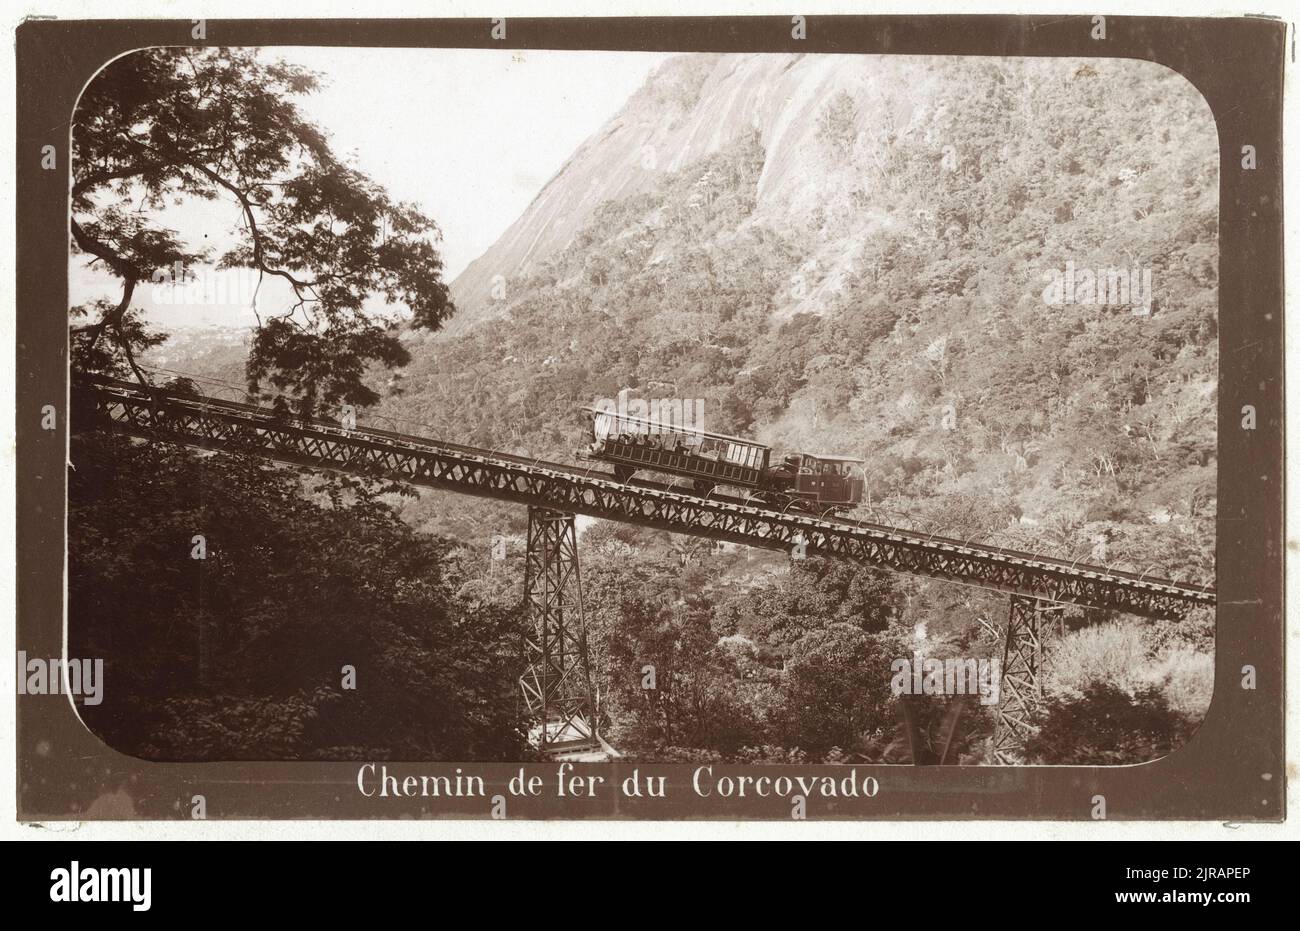 Le chemin de fer de Corcovado au-dessus du pont Silvestre, Rio de Janeiro, Brésil, vers 1890. La légende sous l'image est « chemin de fer Corcovado ». Photographie de Marc Ferrez (1843 - 1923). Banque D'Images